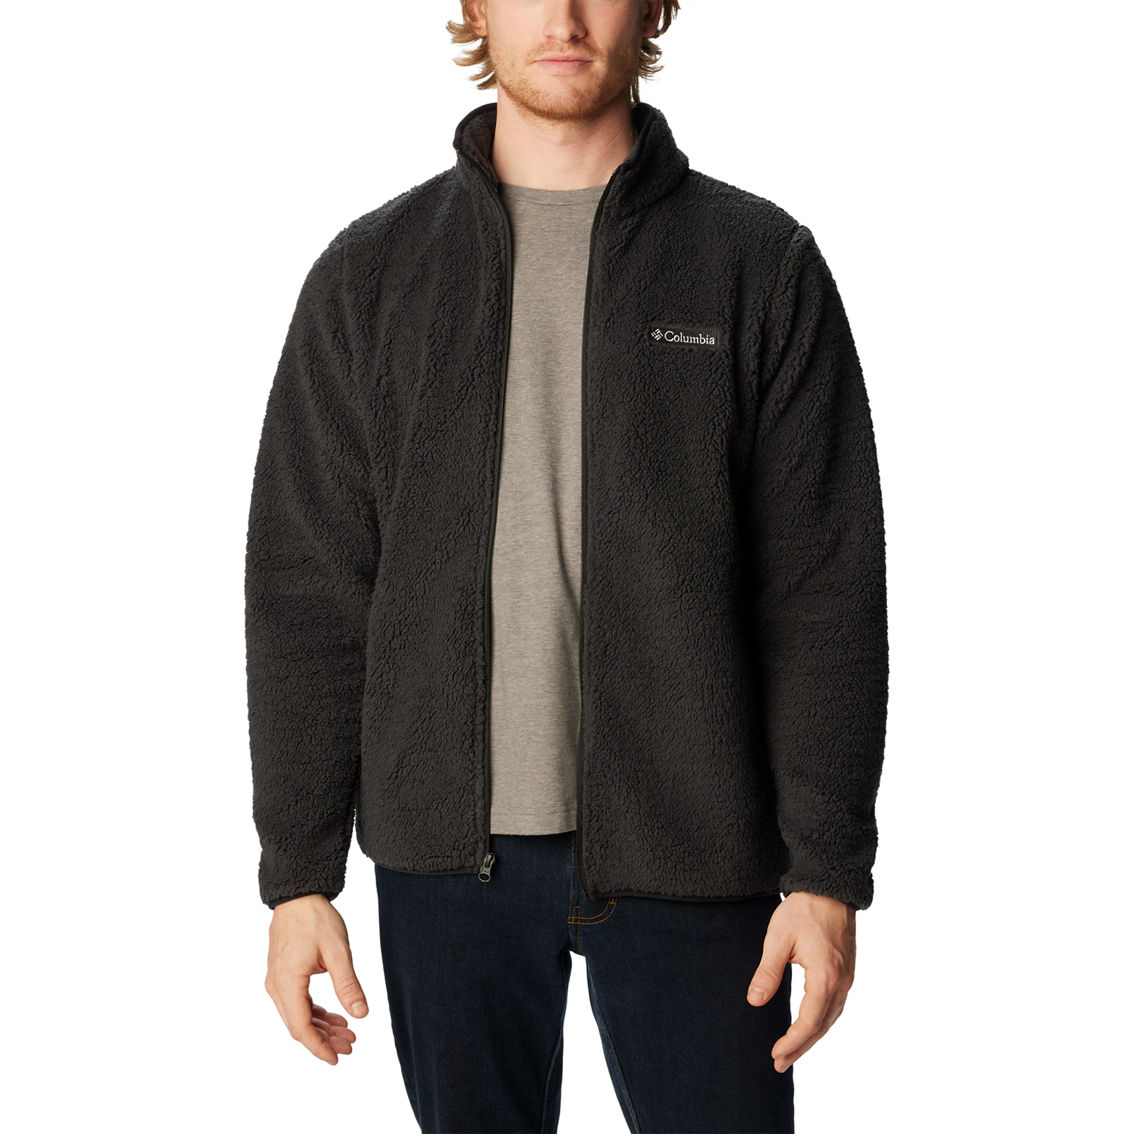 Columbia Rugged Ridge Iii Sherpa Full Zip Jacket | Jackets | Clothing ...